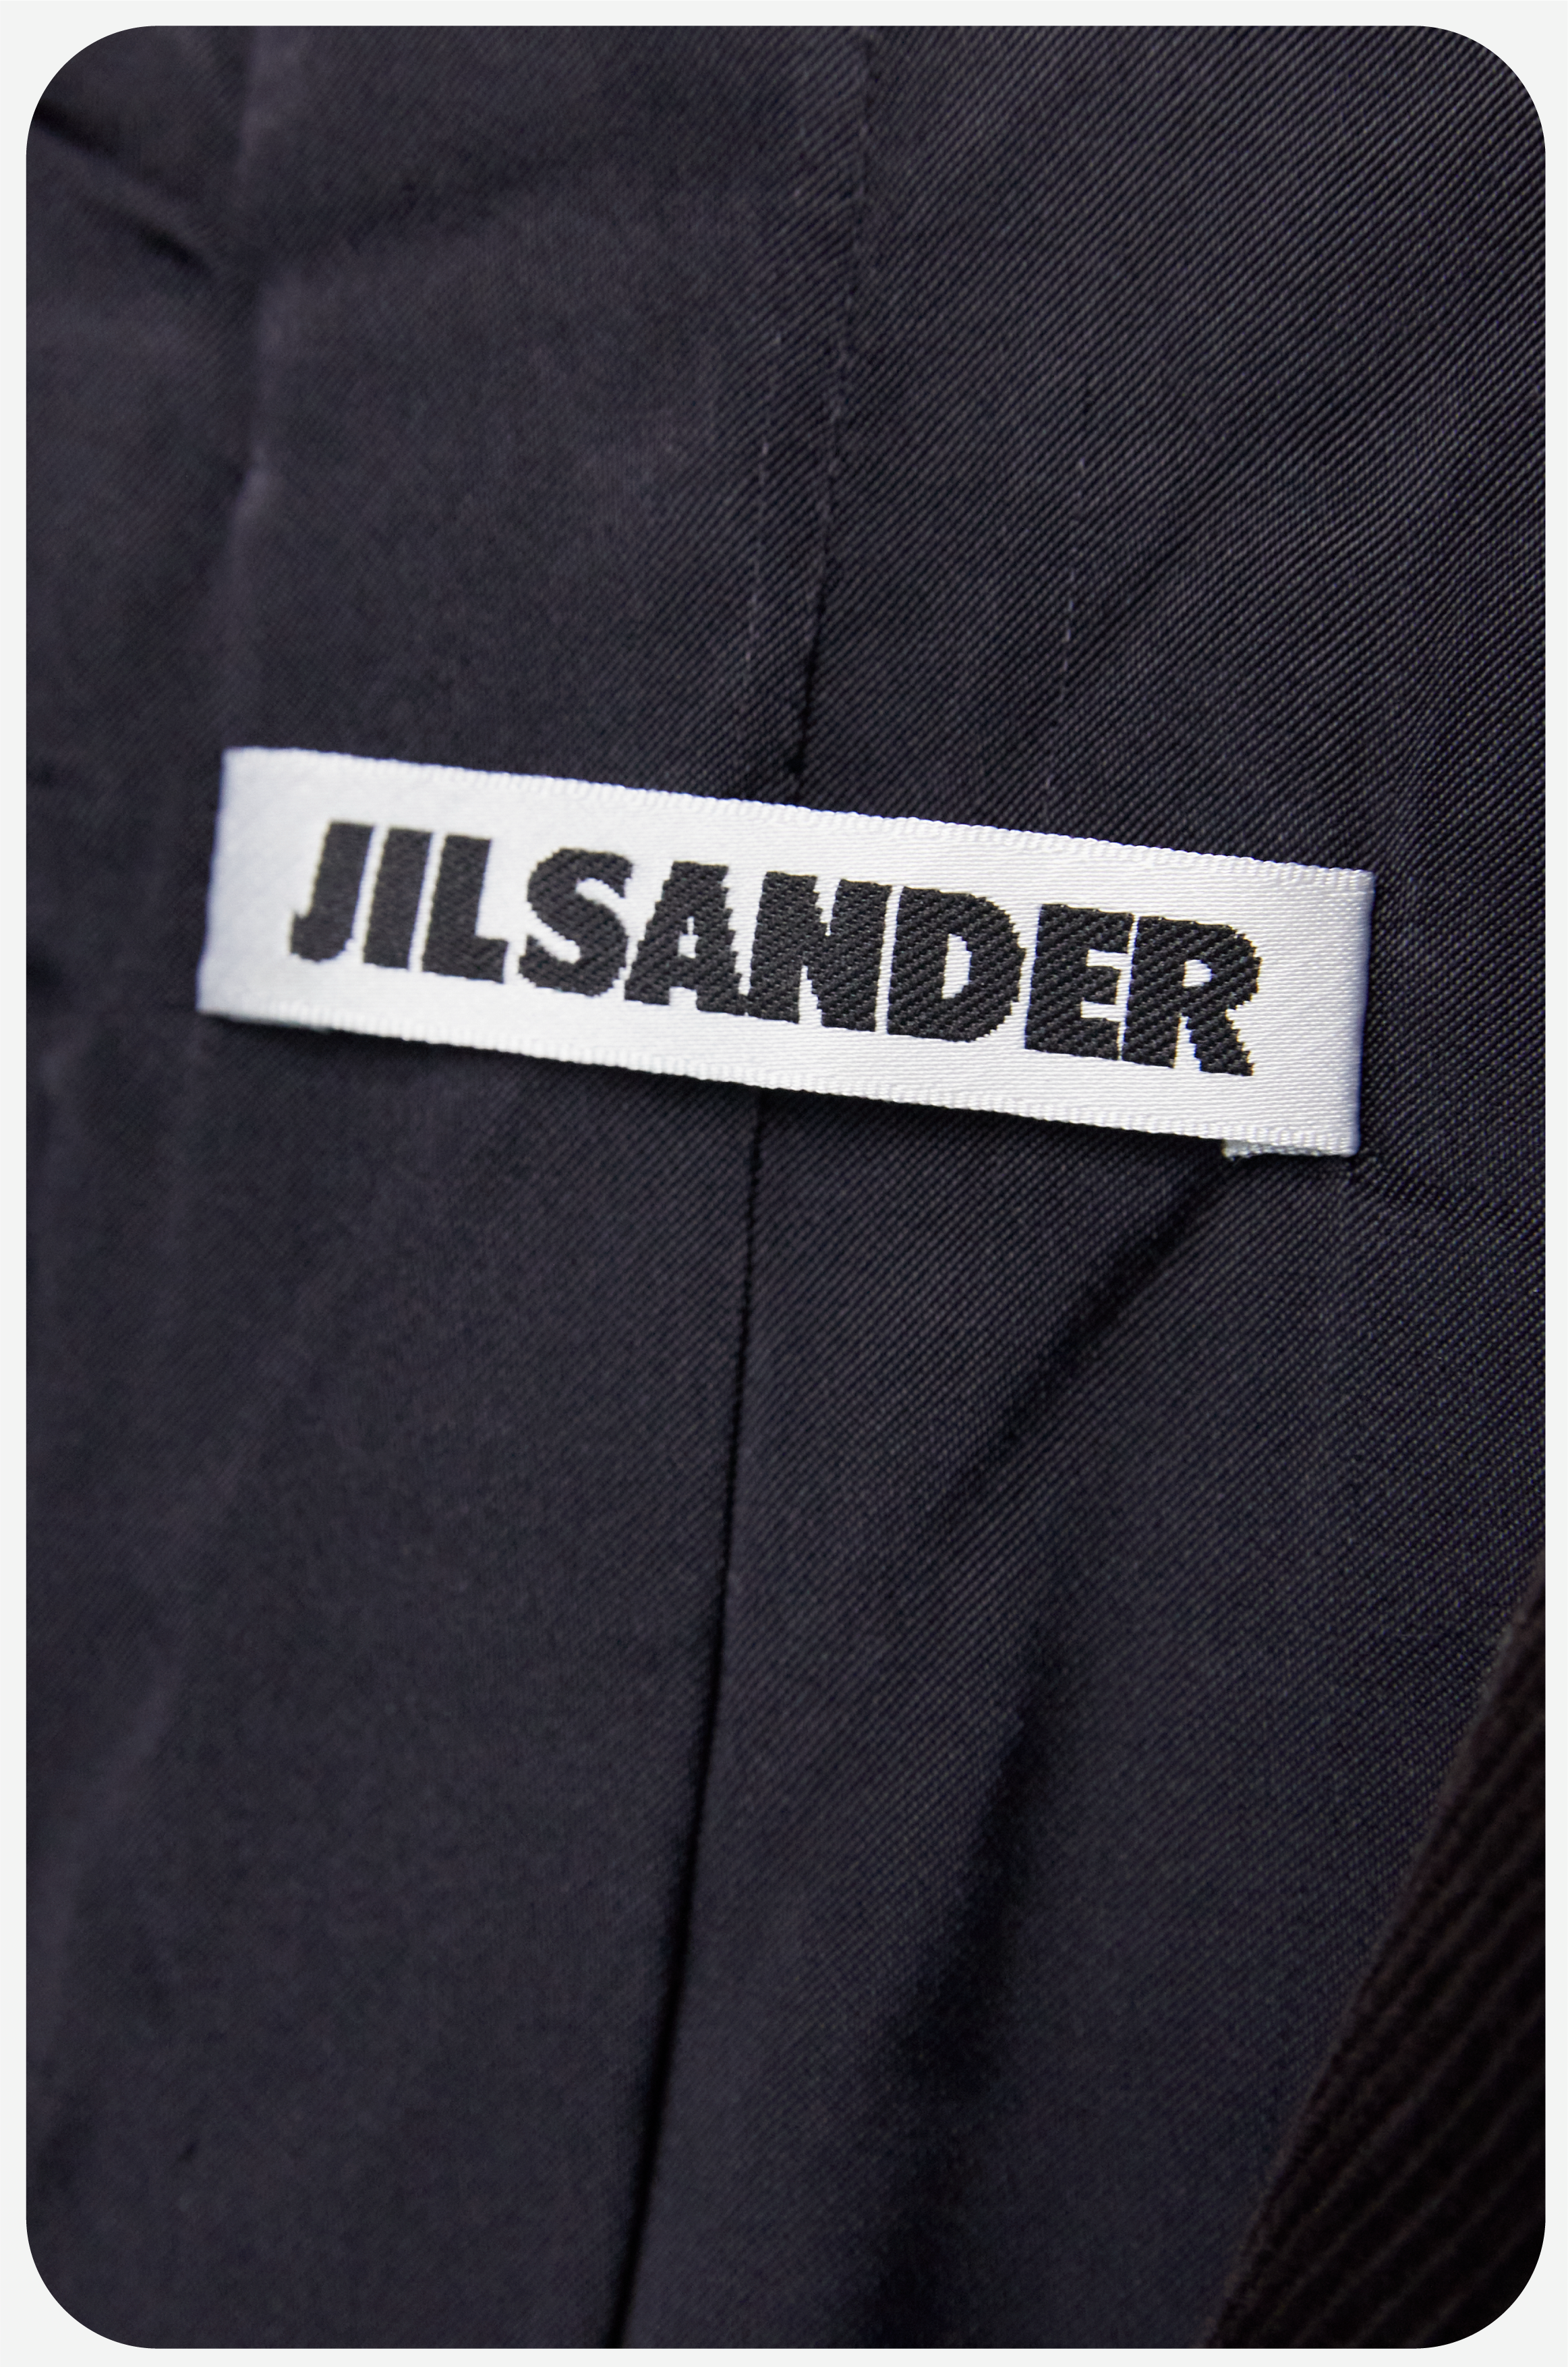 Archives Room: JIL SANDER Corduroy Jacket